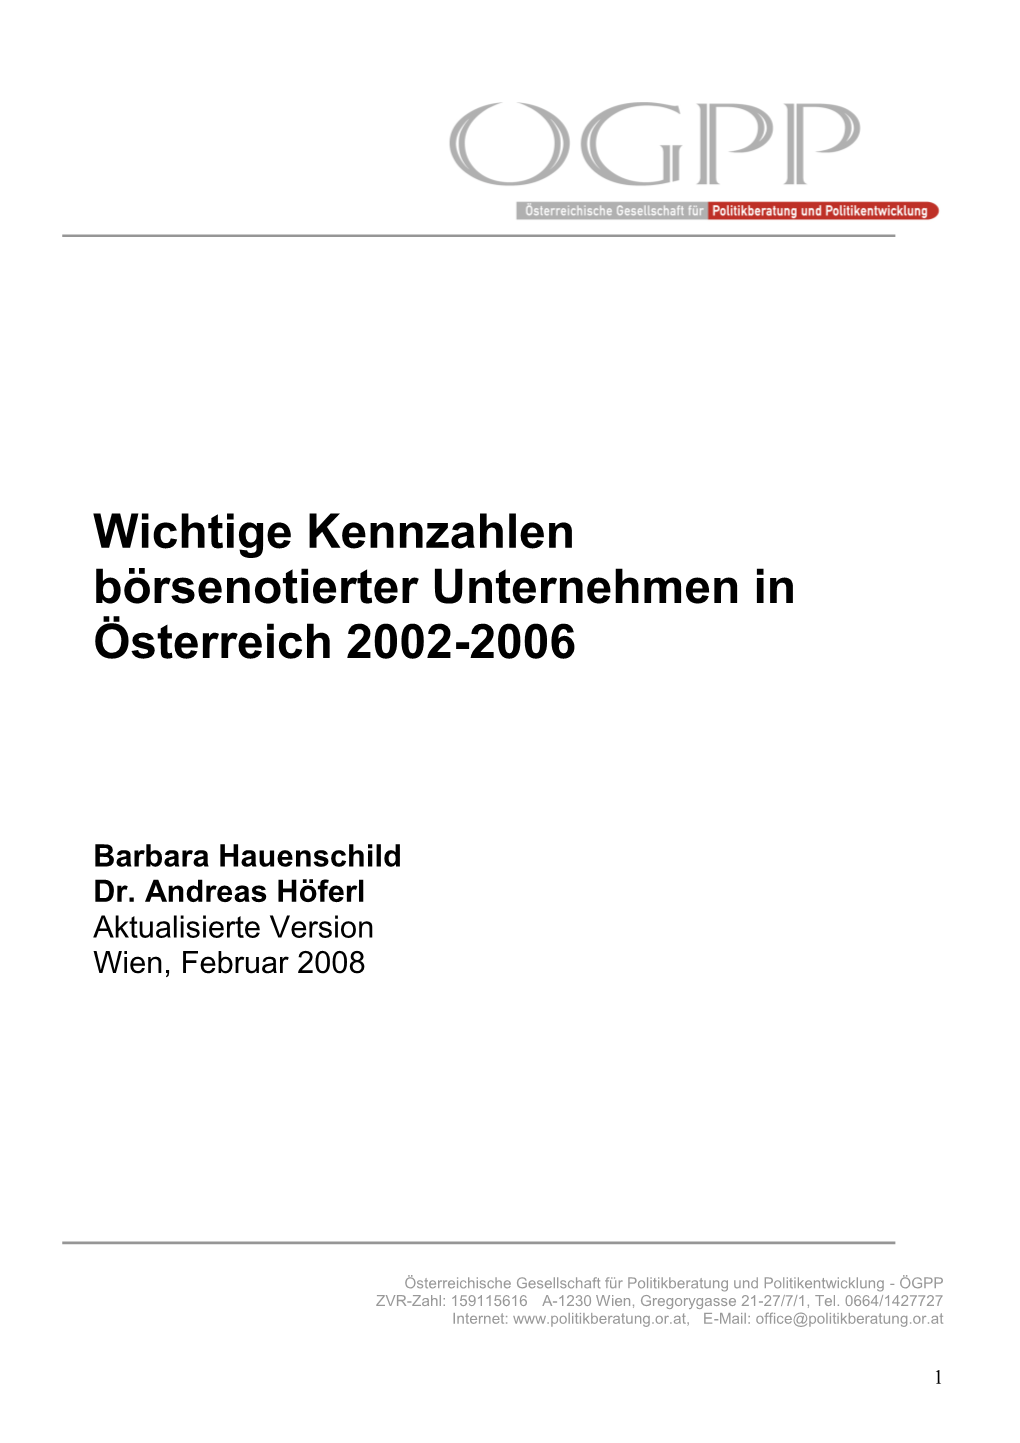 Wichtige Kennzahlen Börsenotierter Unternehmen in Österreich 2002-2006